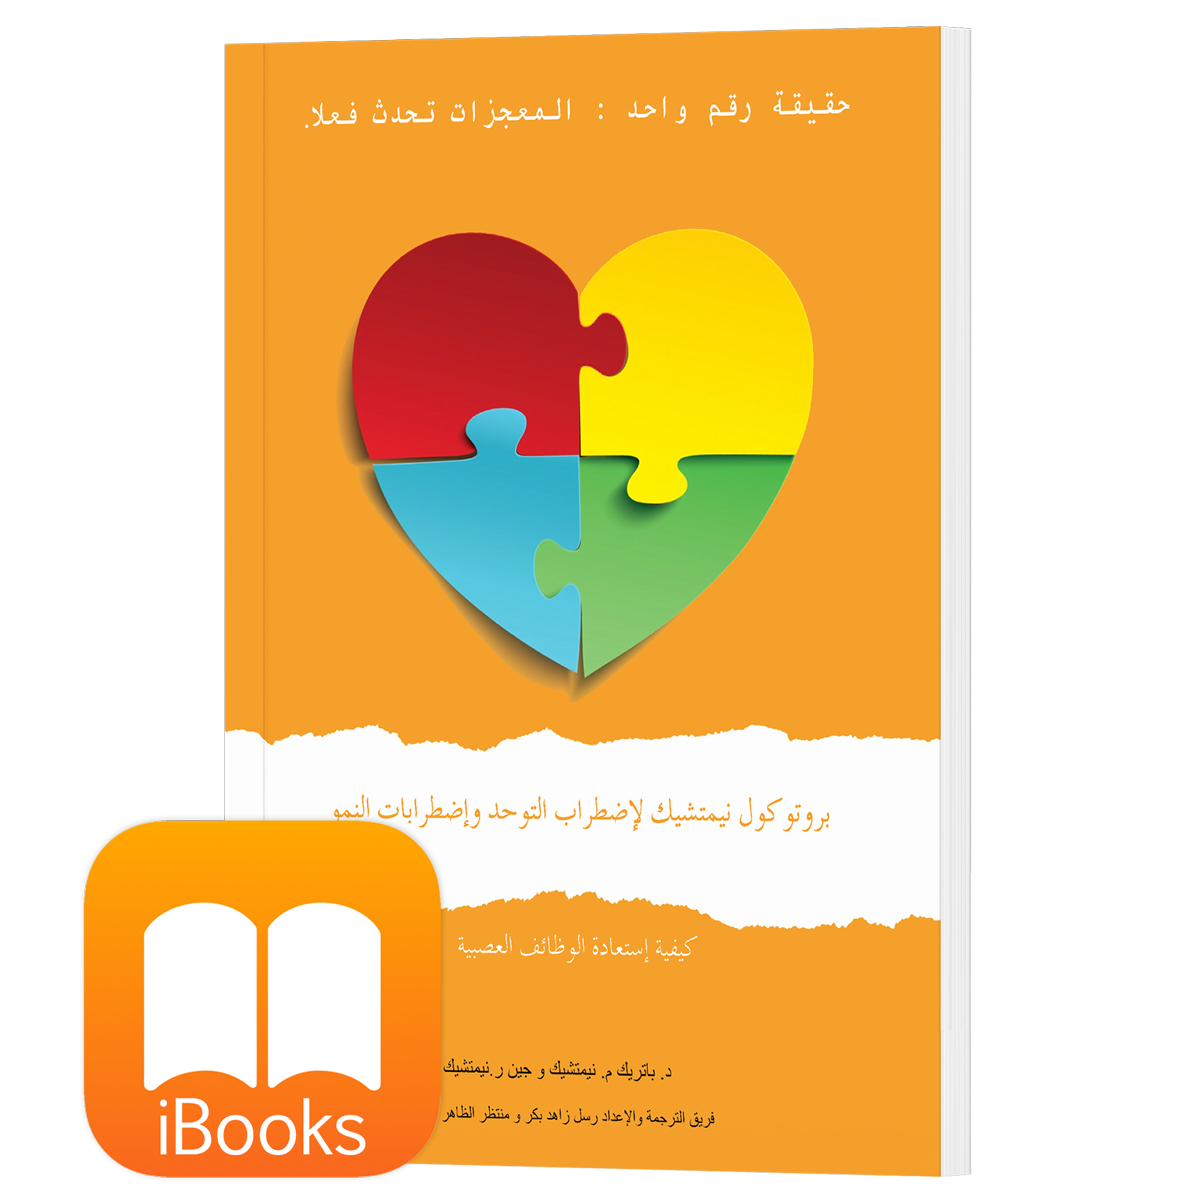 الطبعة الأولى (Arabic, iPhone/iPad/EPUB Reader) بروتوكول نيمتشك لاضطراب التوحد واضطرابات النمو